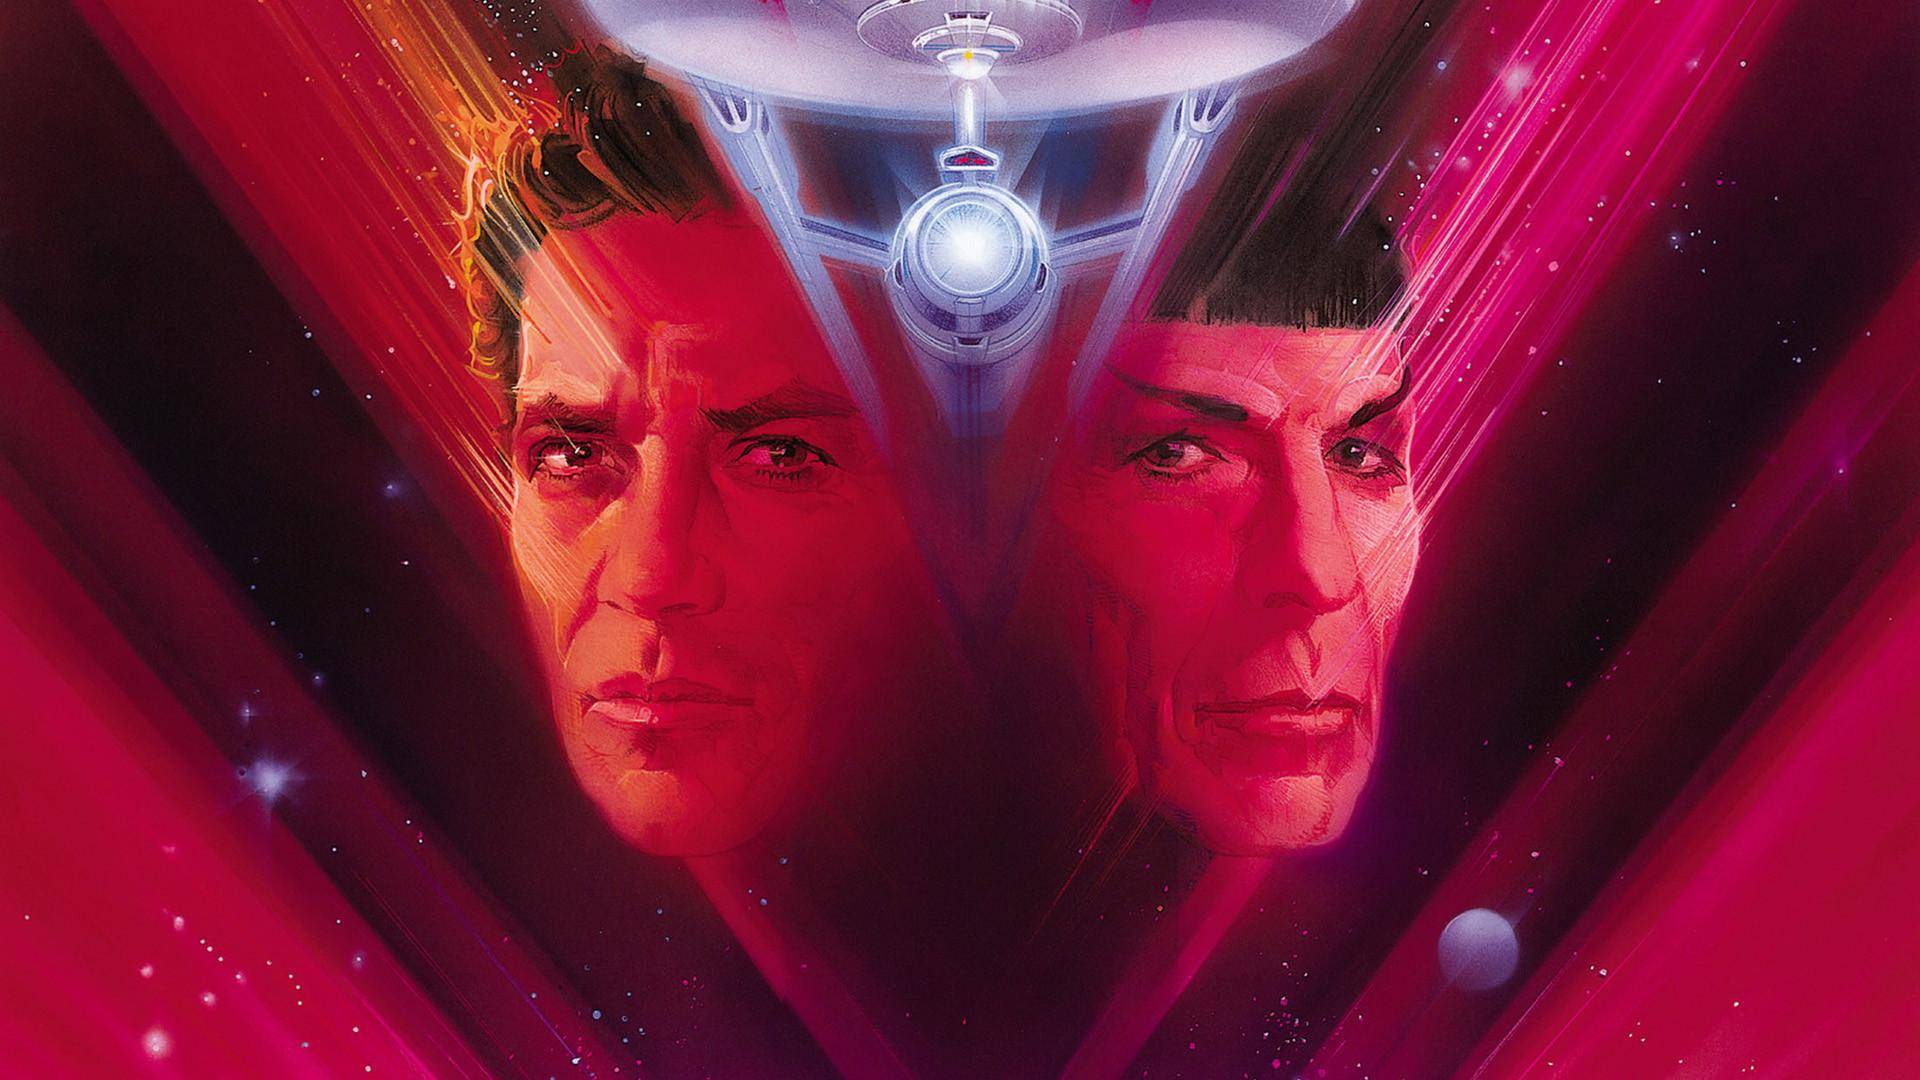 Shatner reveals compromise he regrets most about Star Trek V